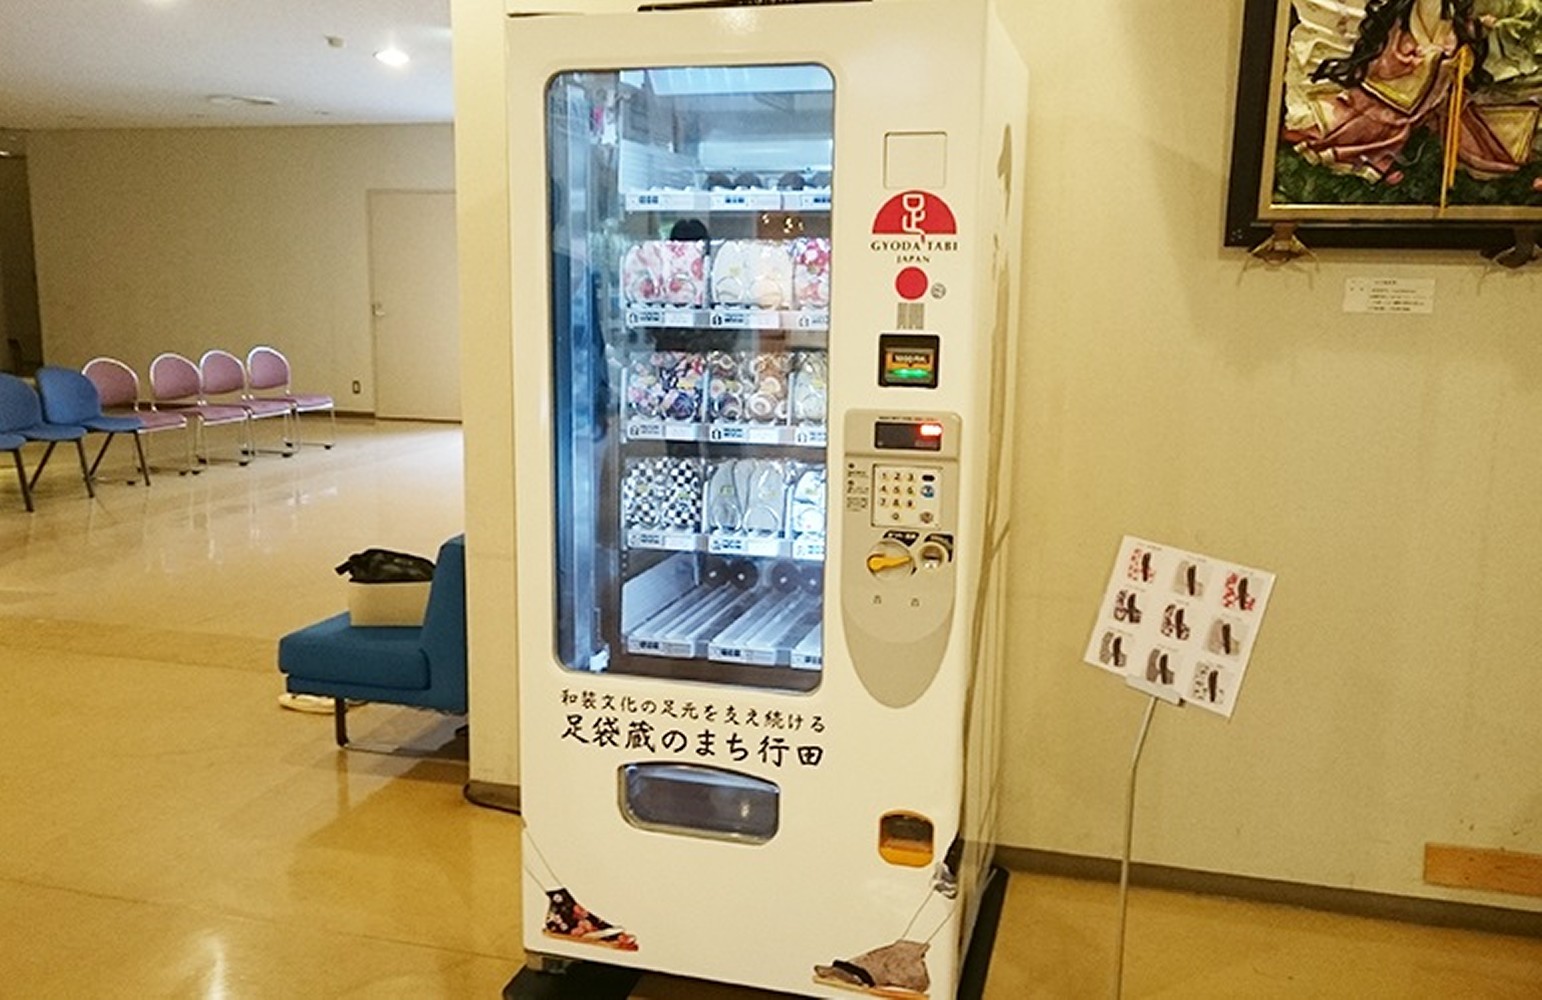 埼玉県行田市が制作した「足袋の自動販売機」